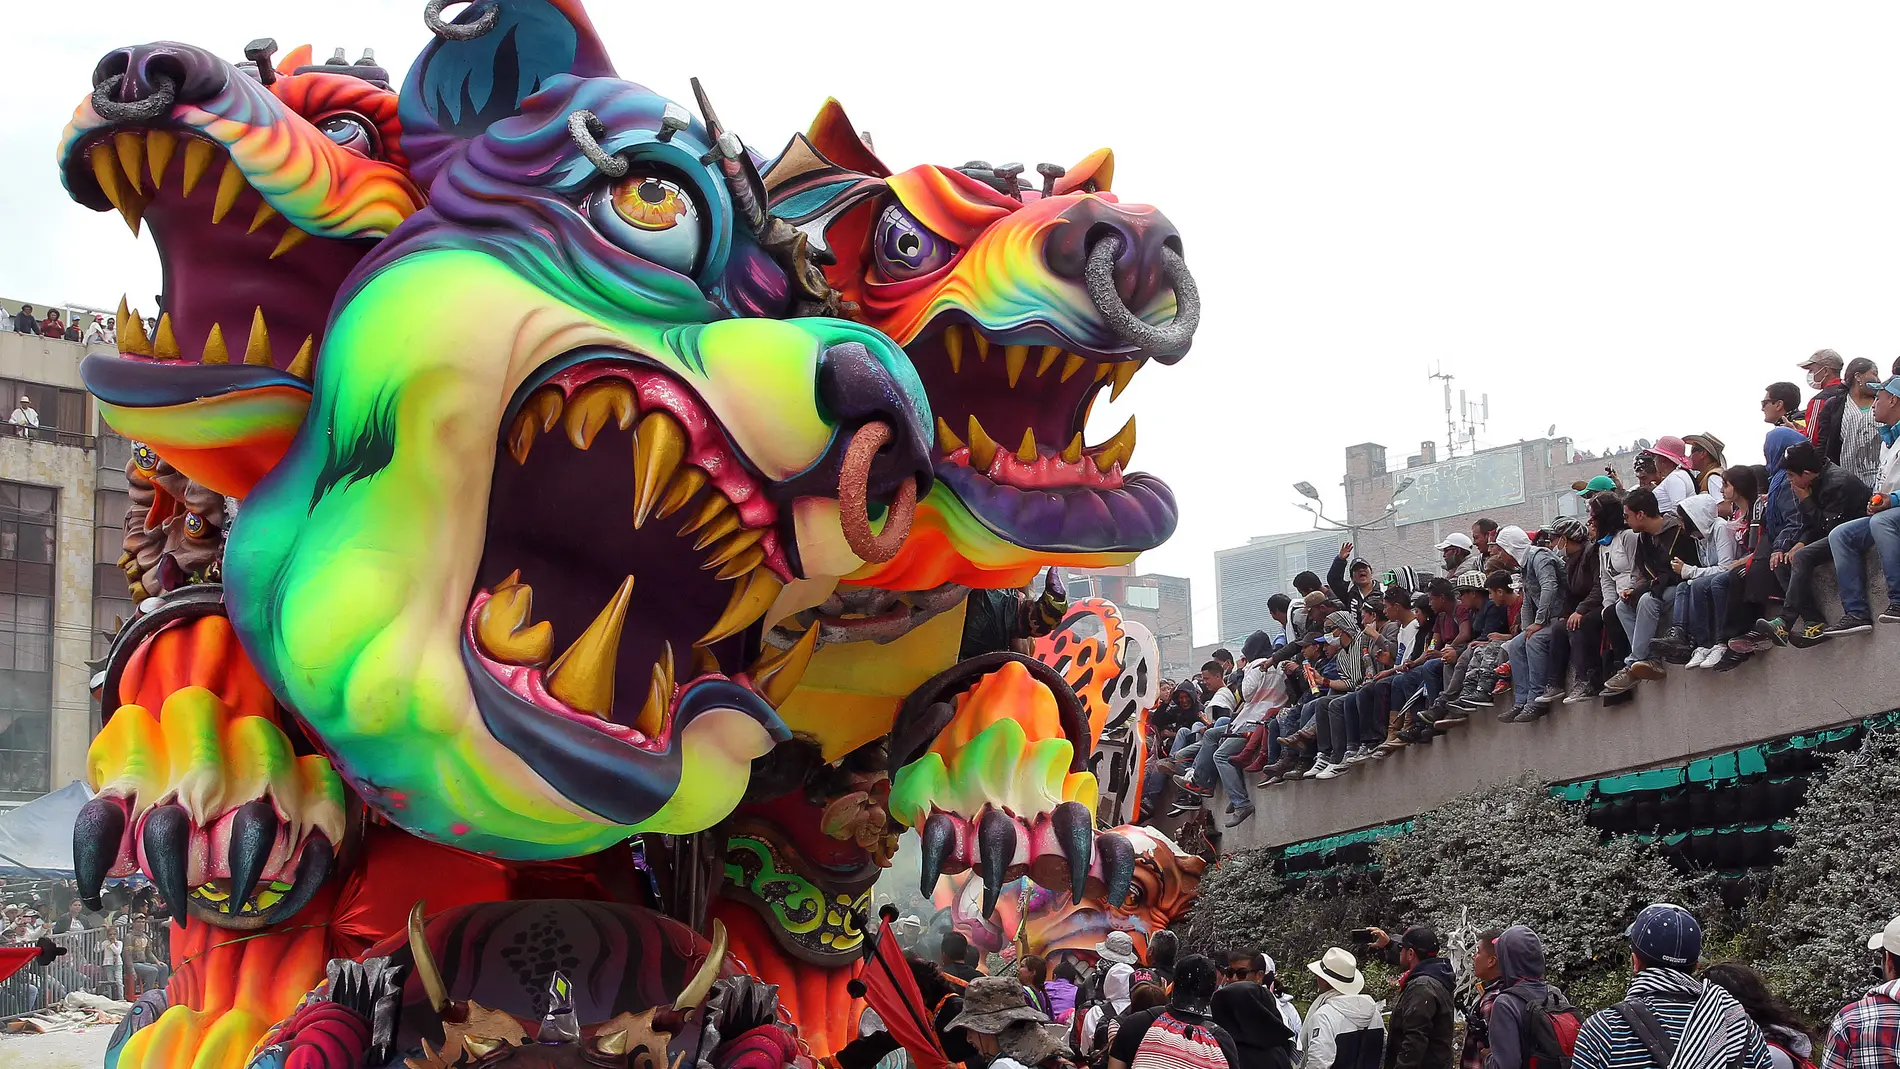 Enormes esculturas rodantes del carnaval de Negros y Blancos